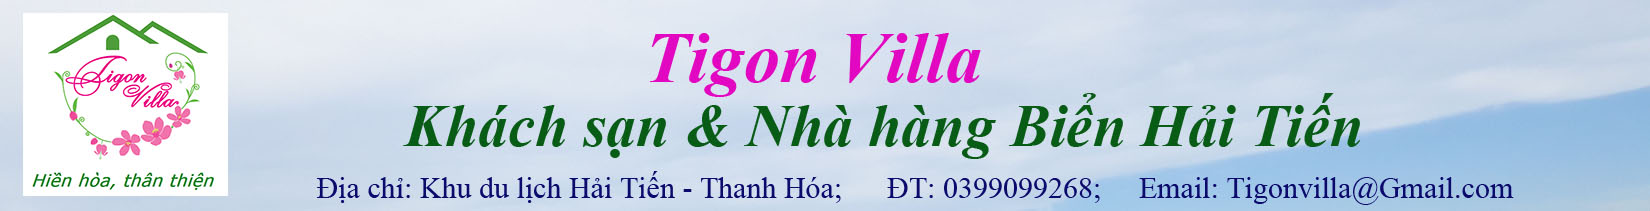 logo Tigon Villa